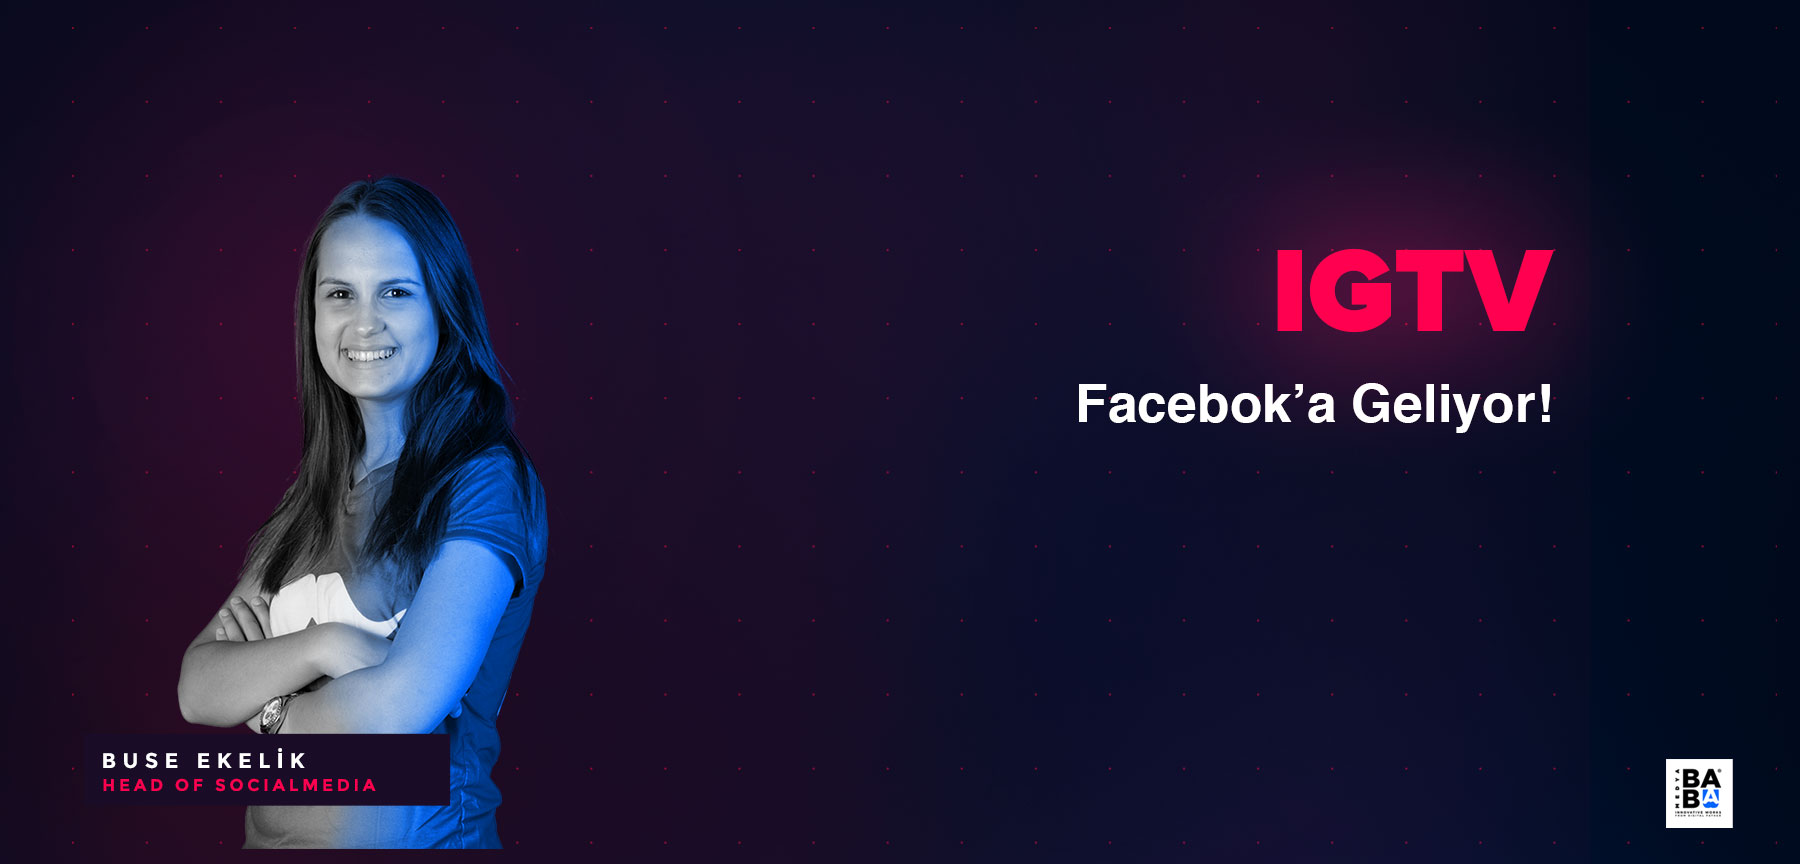 IGTV Facebook'a Geliyor